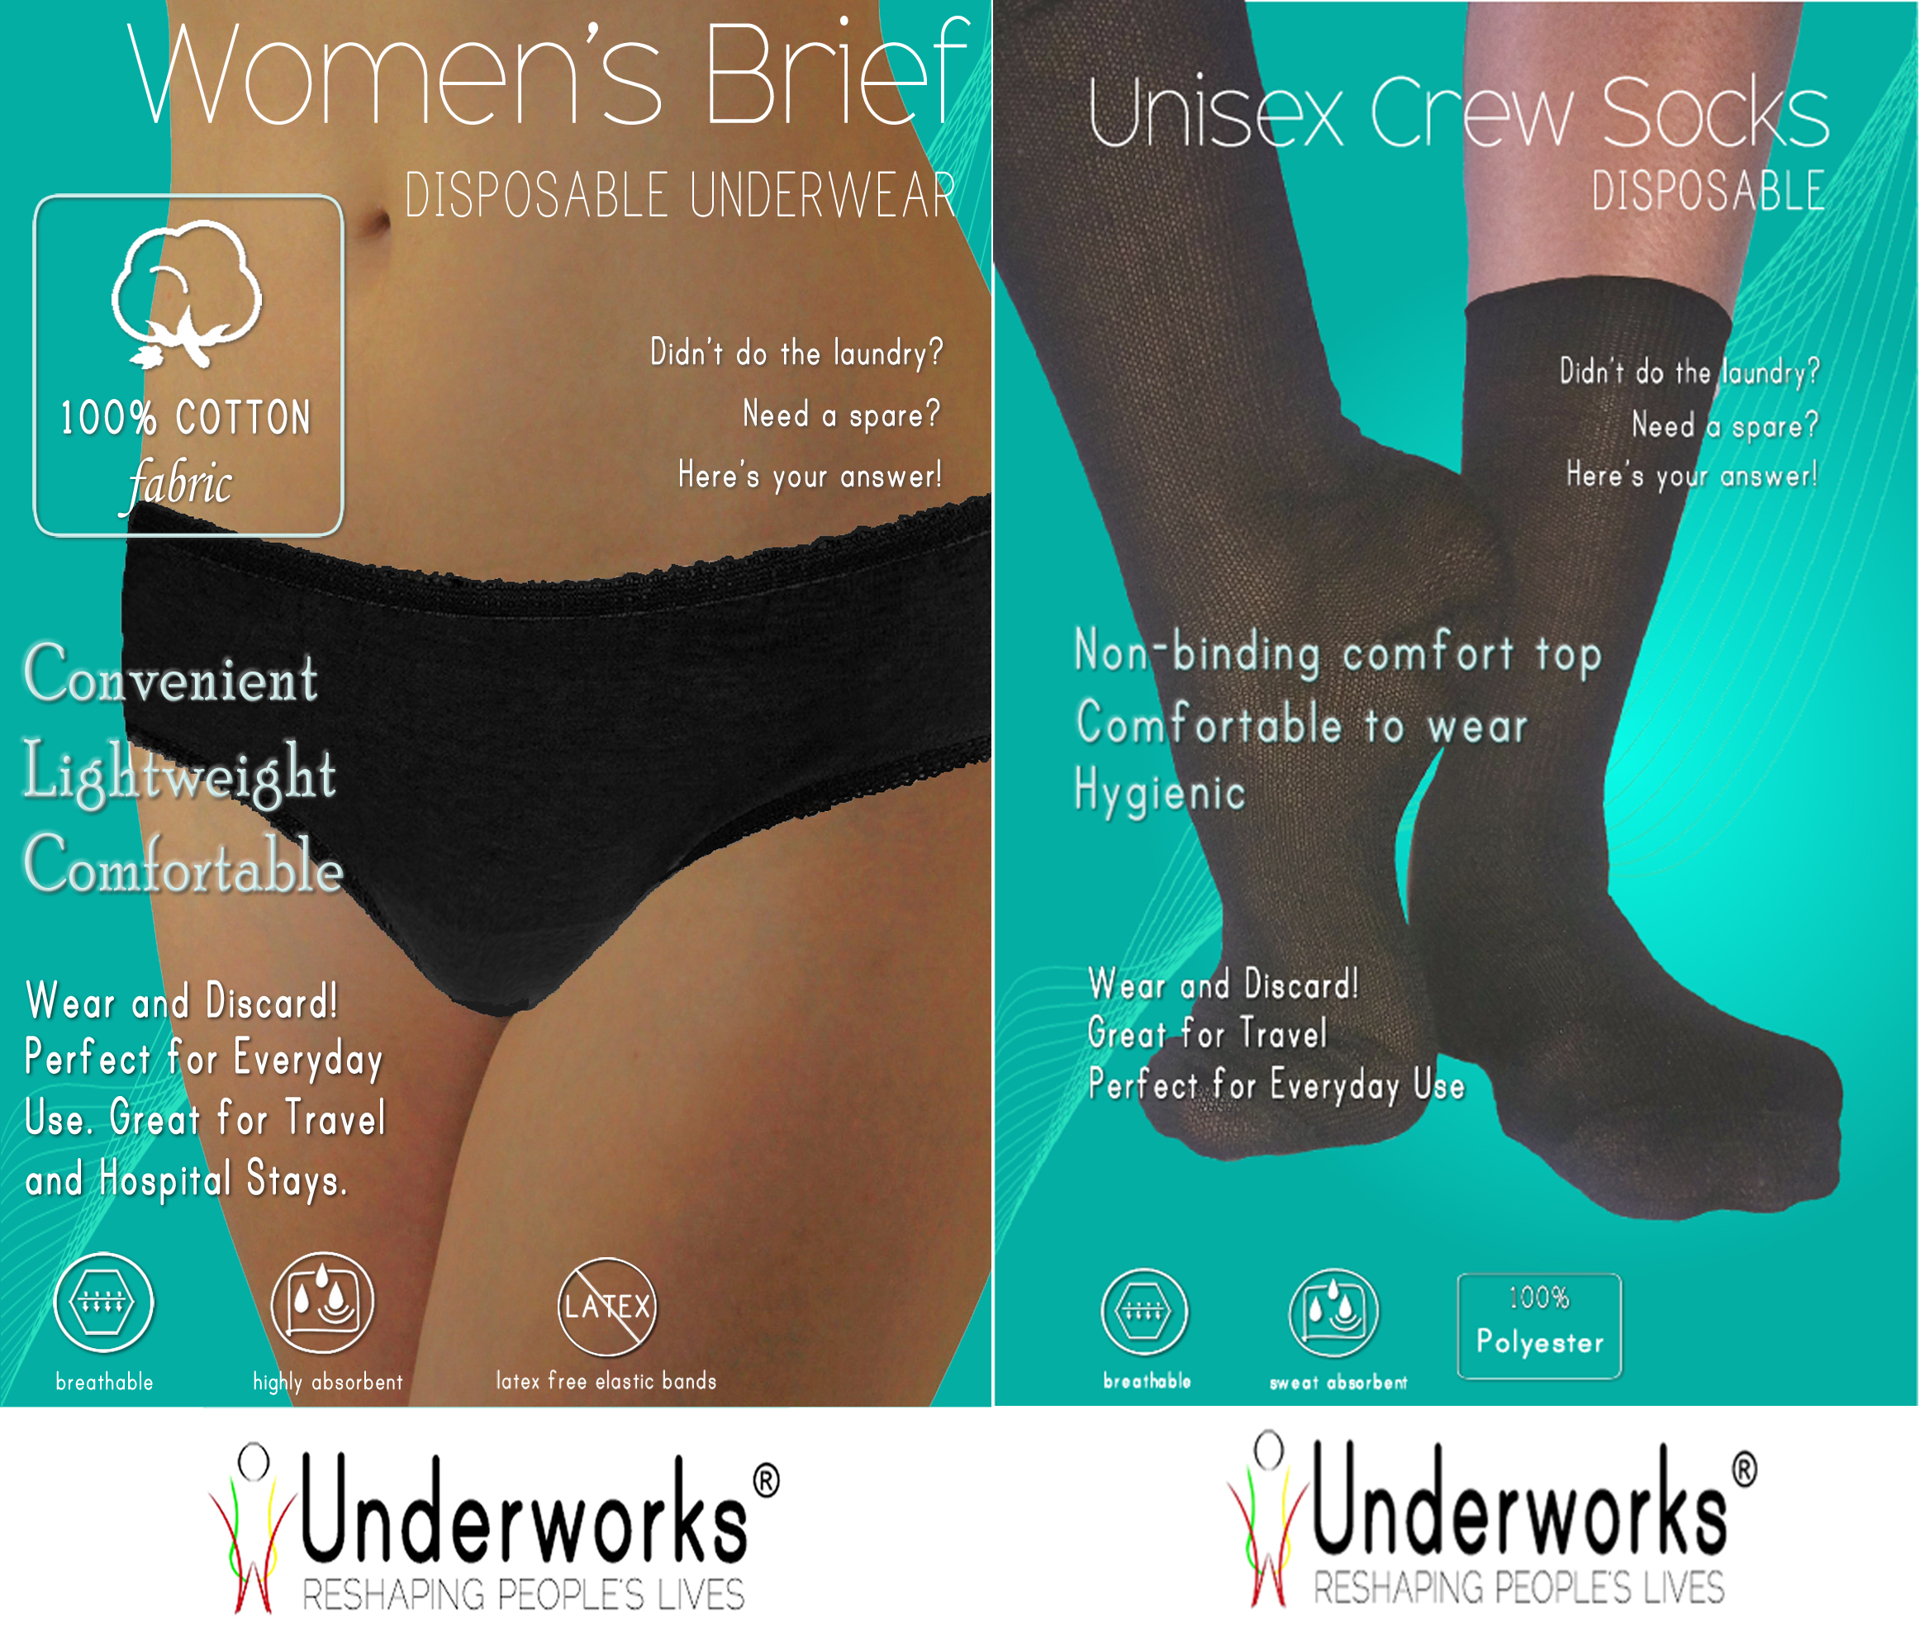 Women Disposable Underwear, Breathable Pure Cotton Disposable